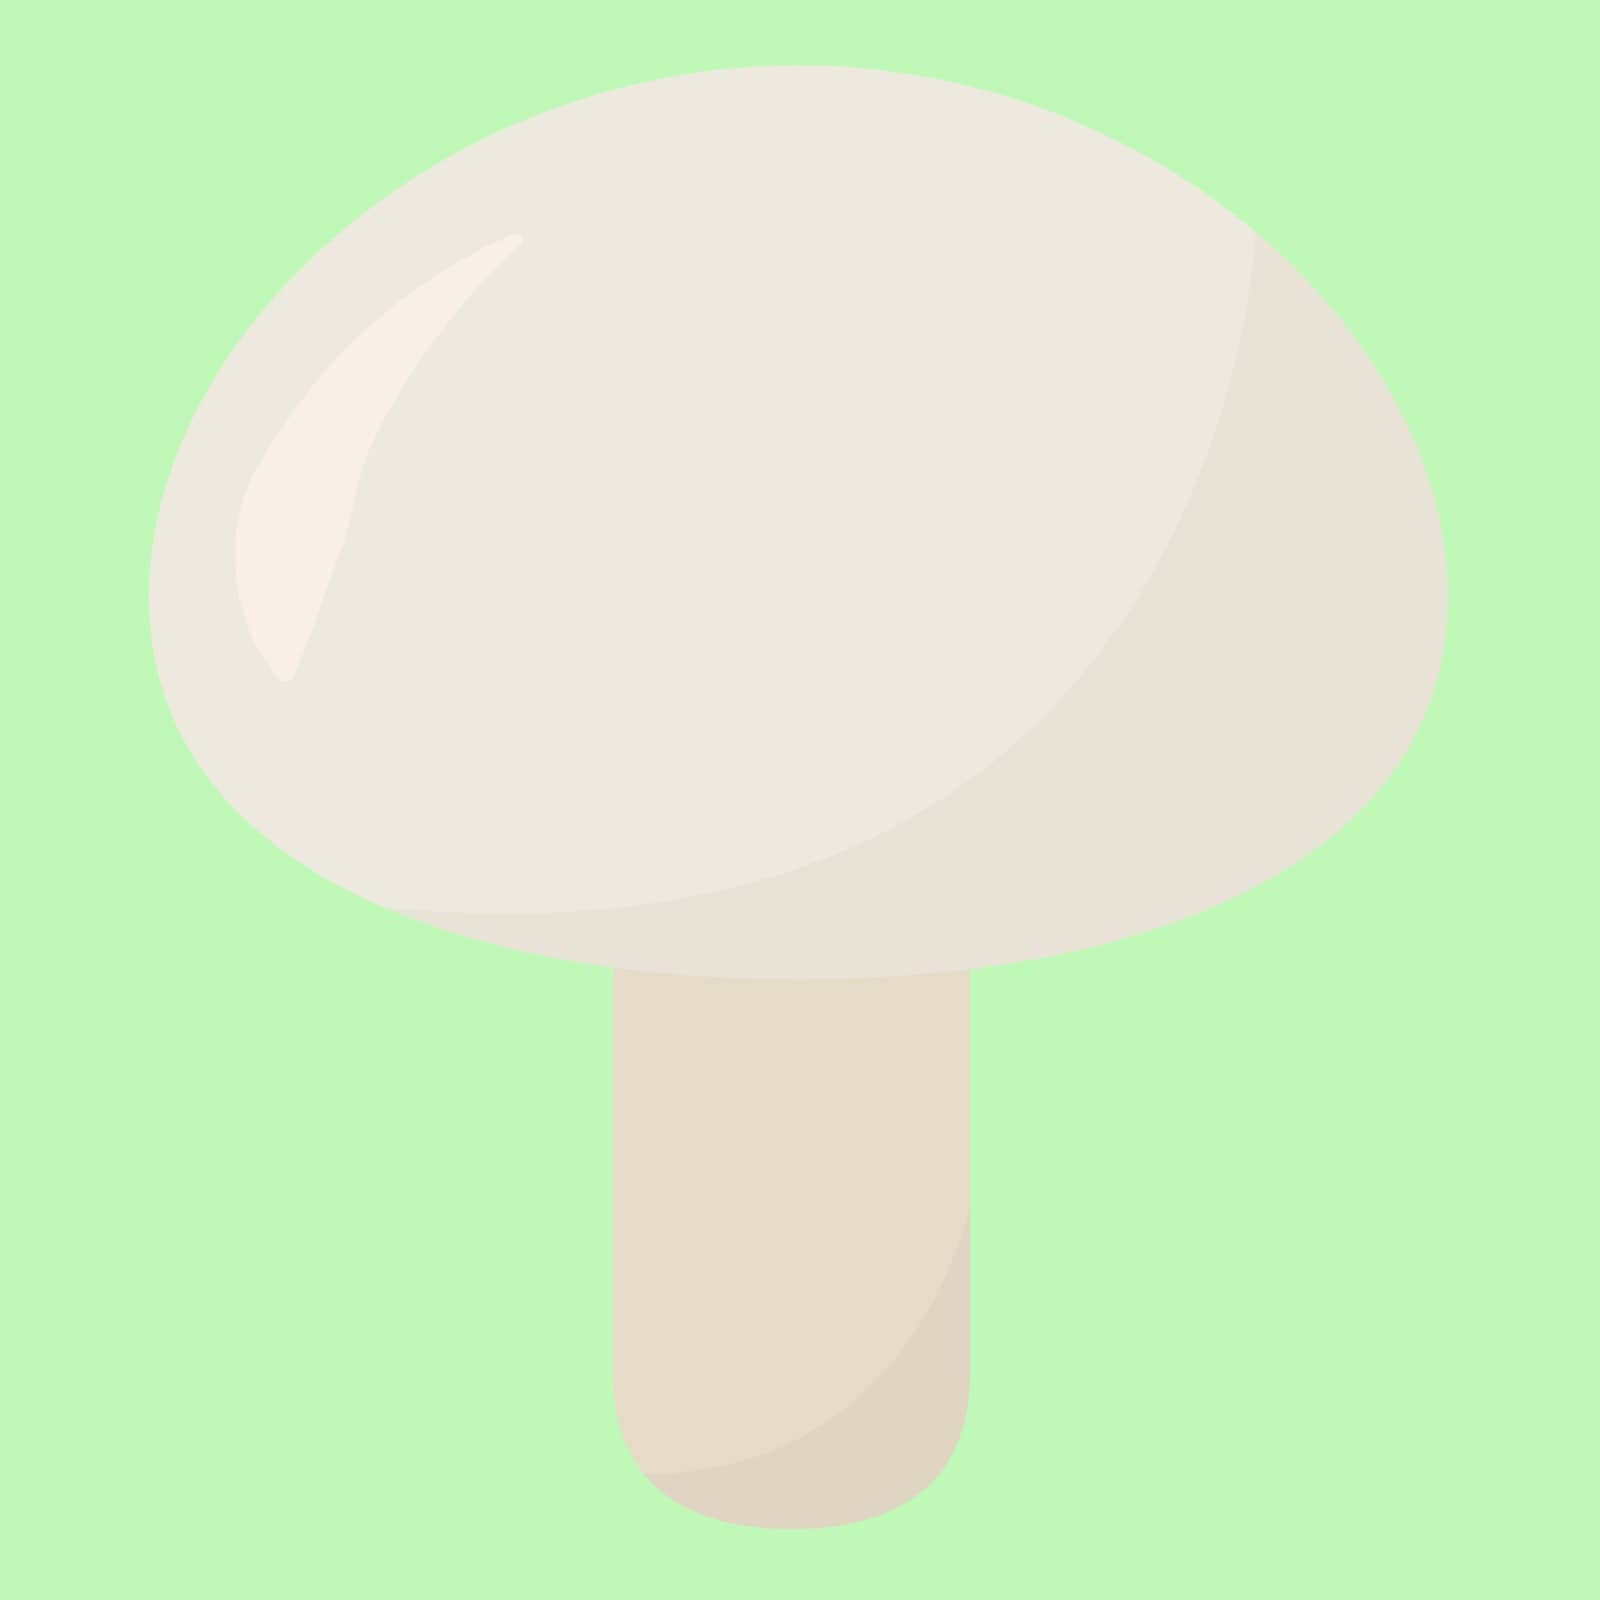 White mushroom, illustration, vector on white background. by Morphart